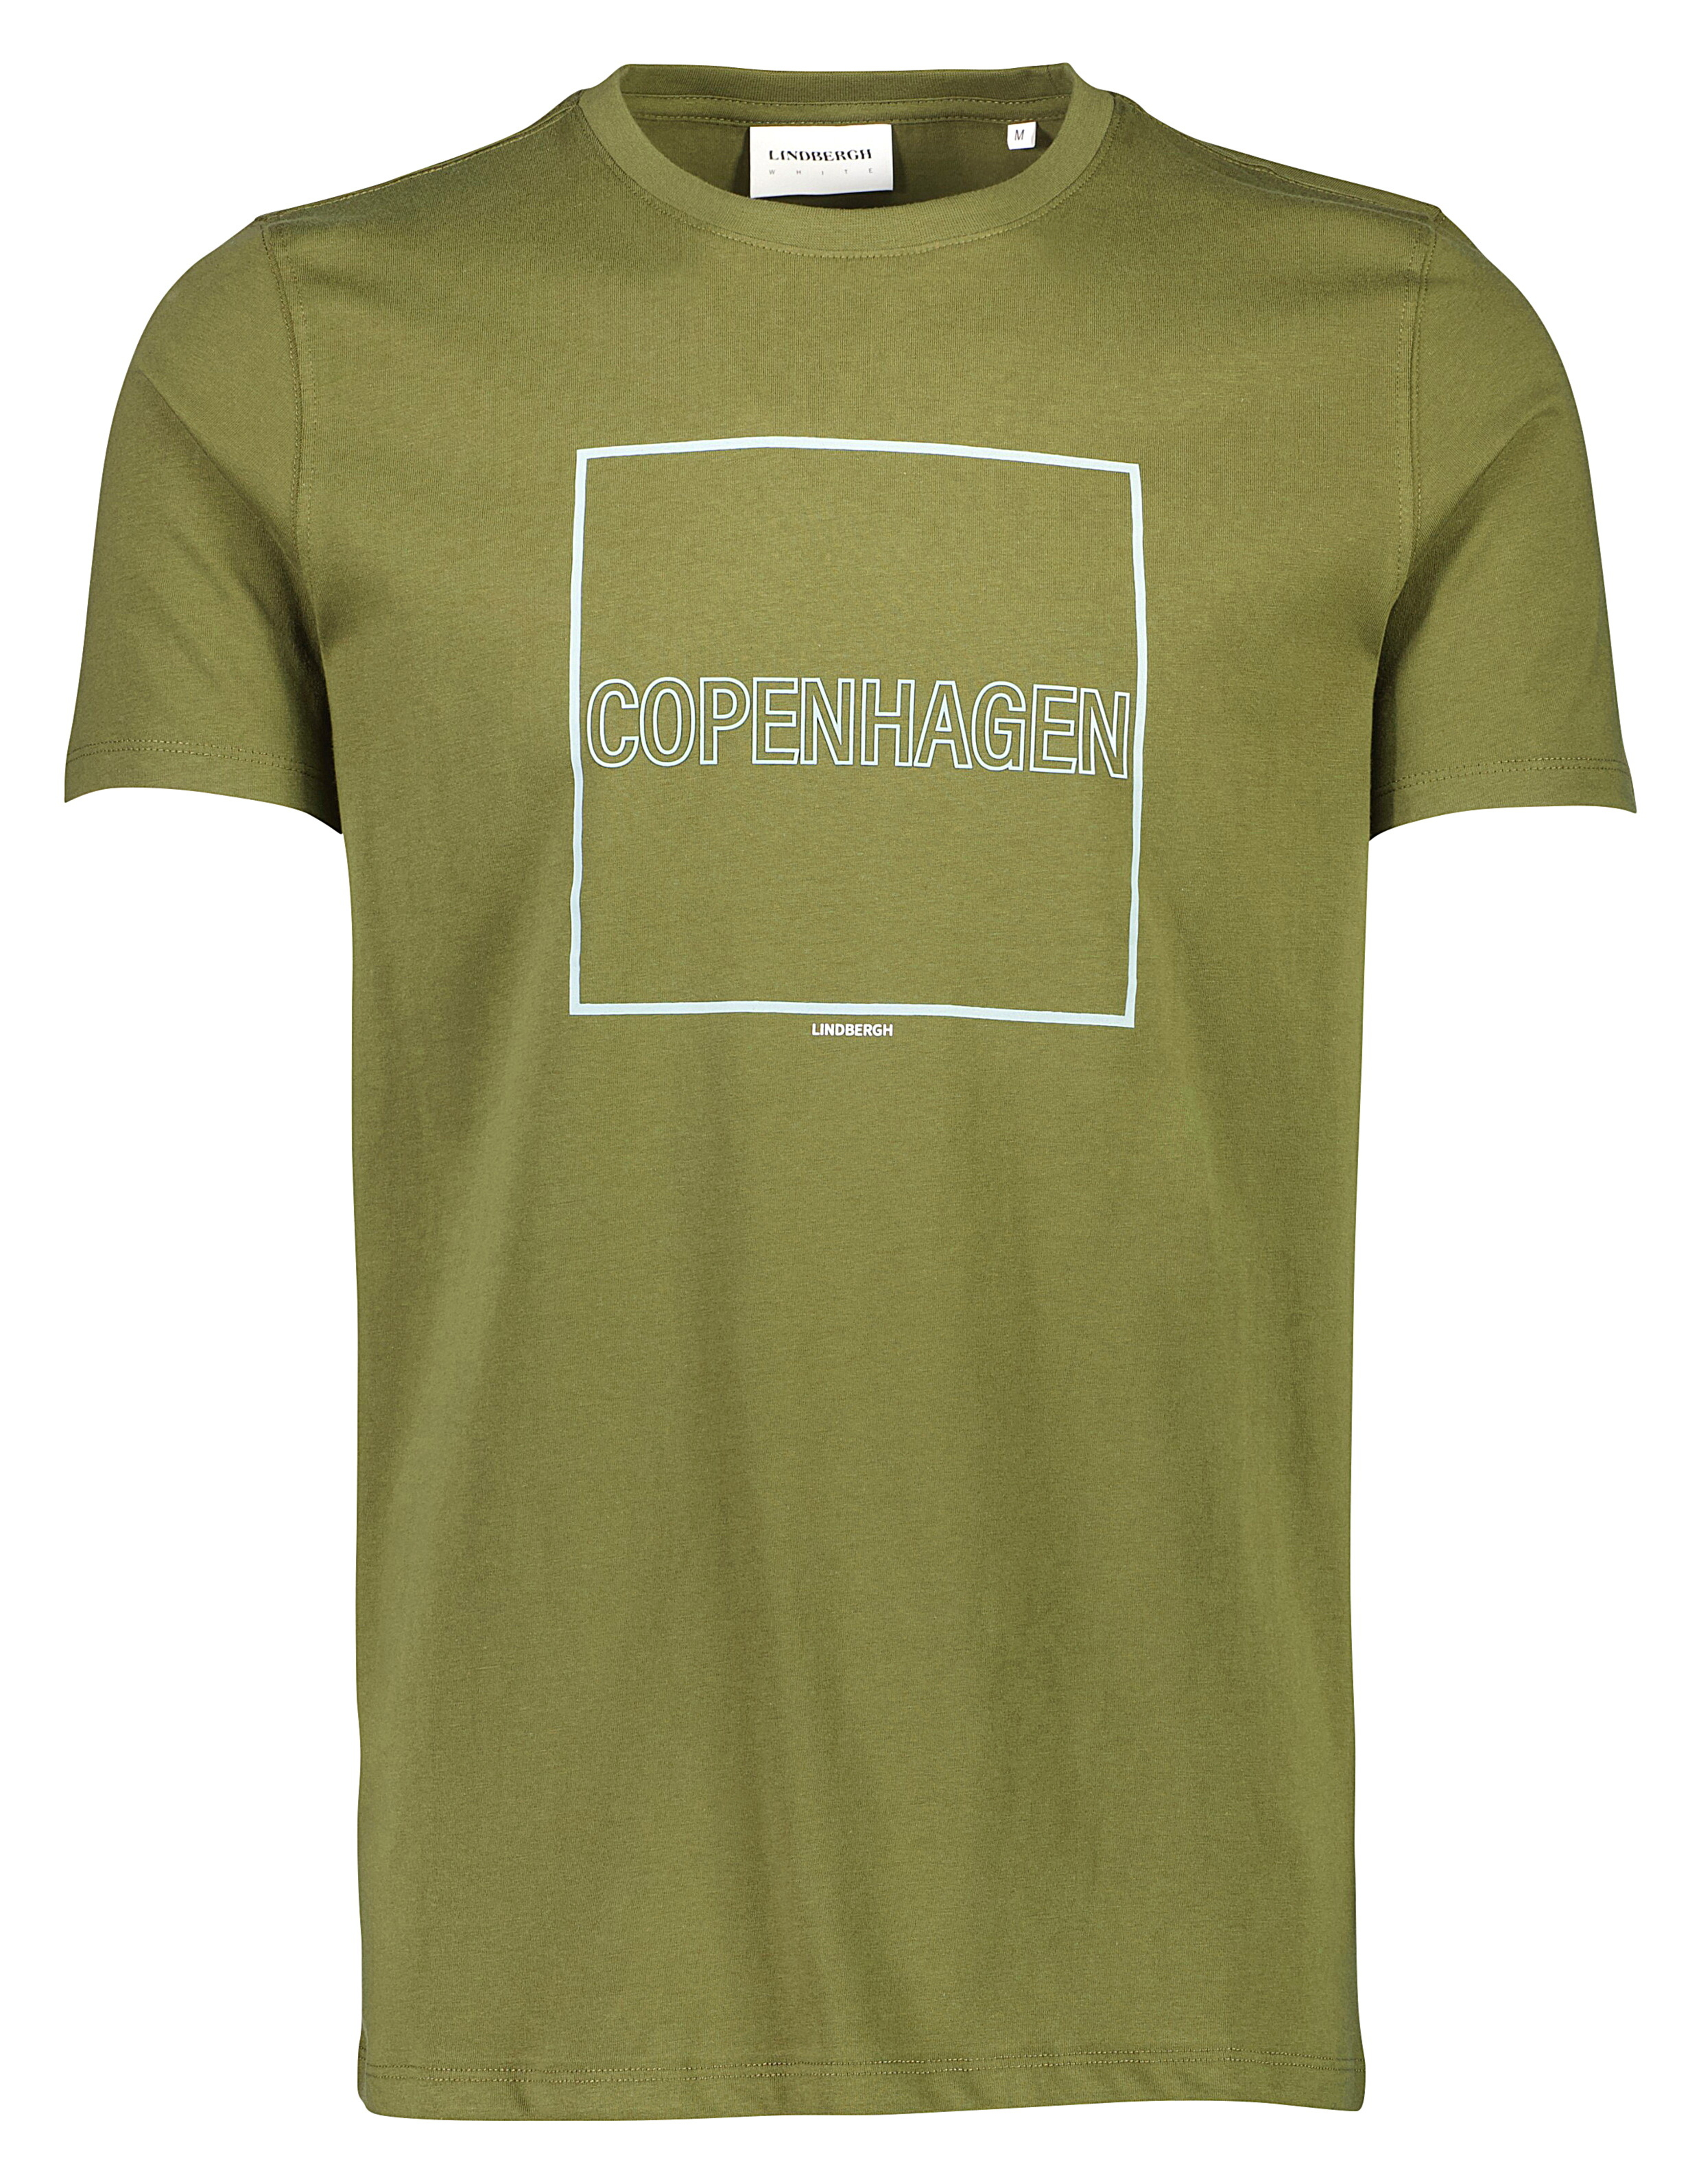 Lindbergh T-shirt grøn / dk army